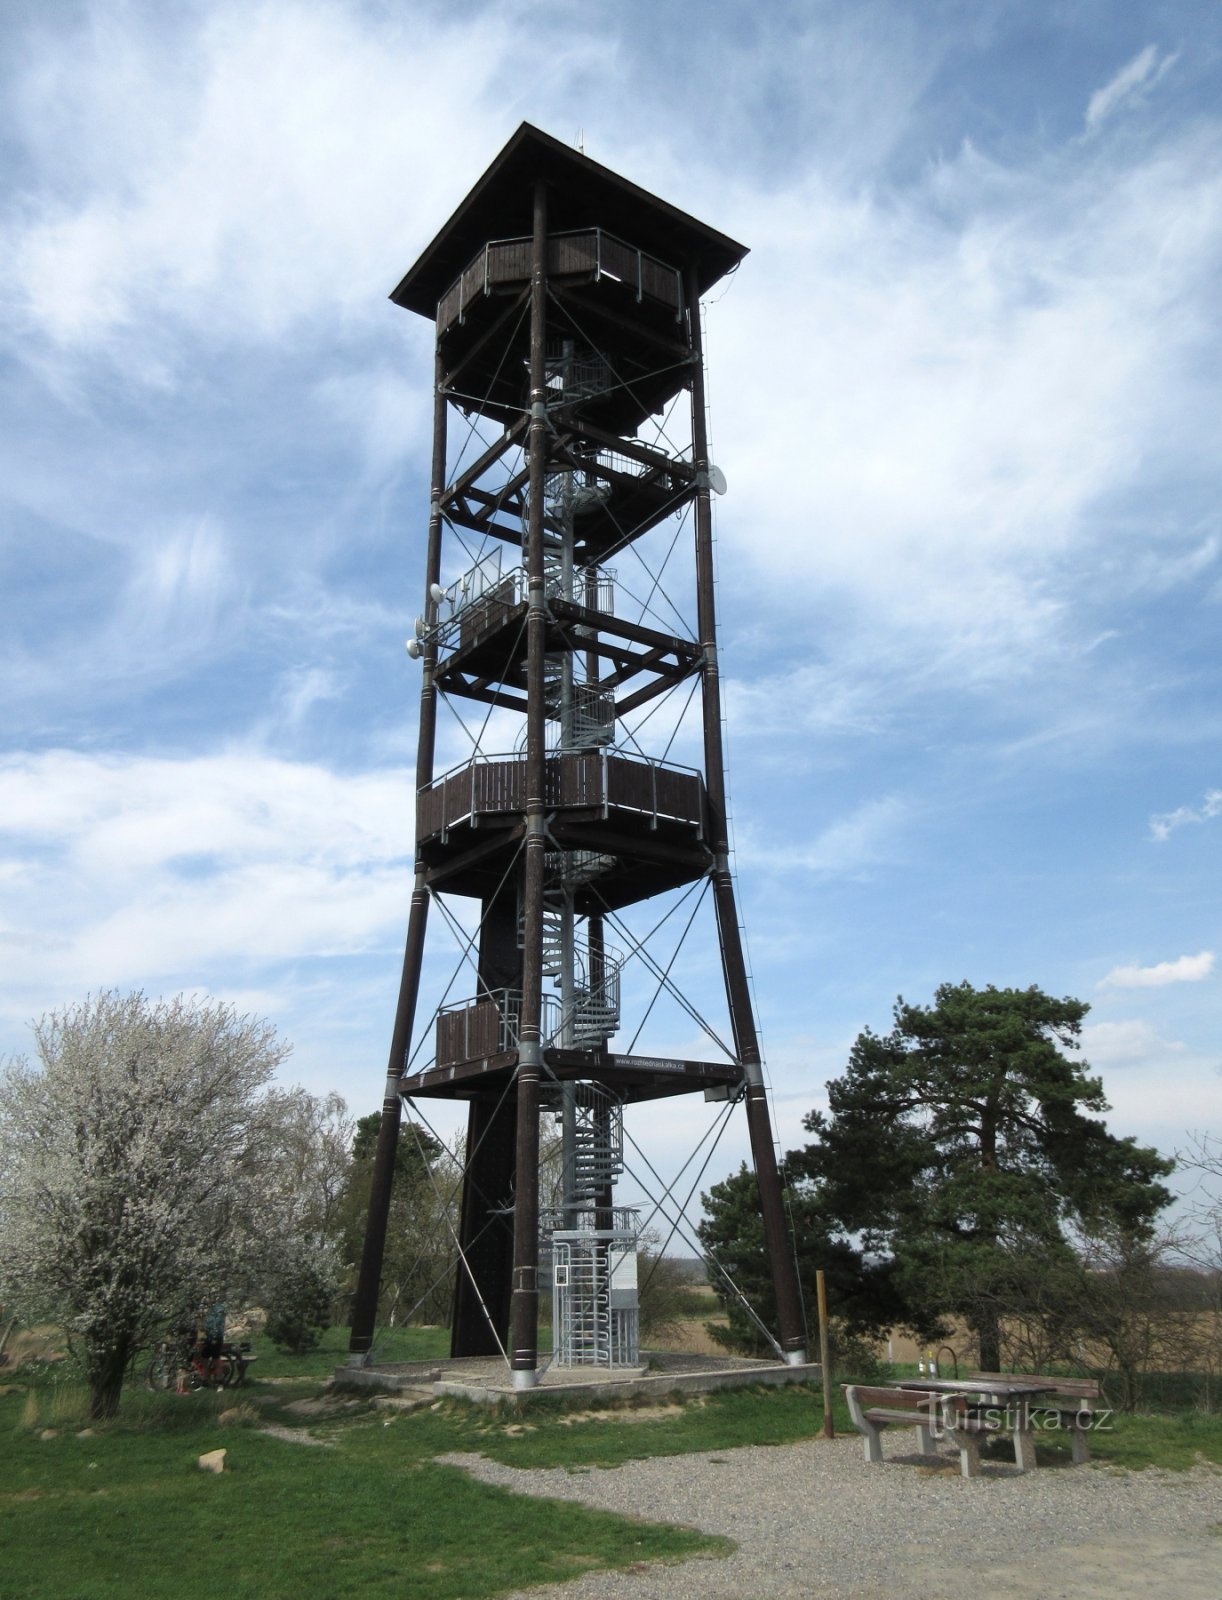 Vyžlovka - tháp quan sát Skalka